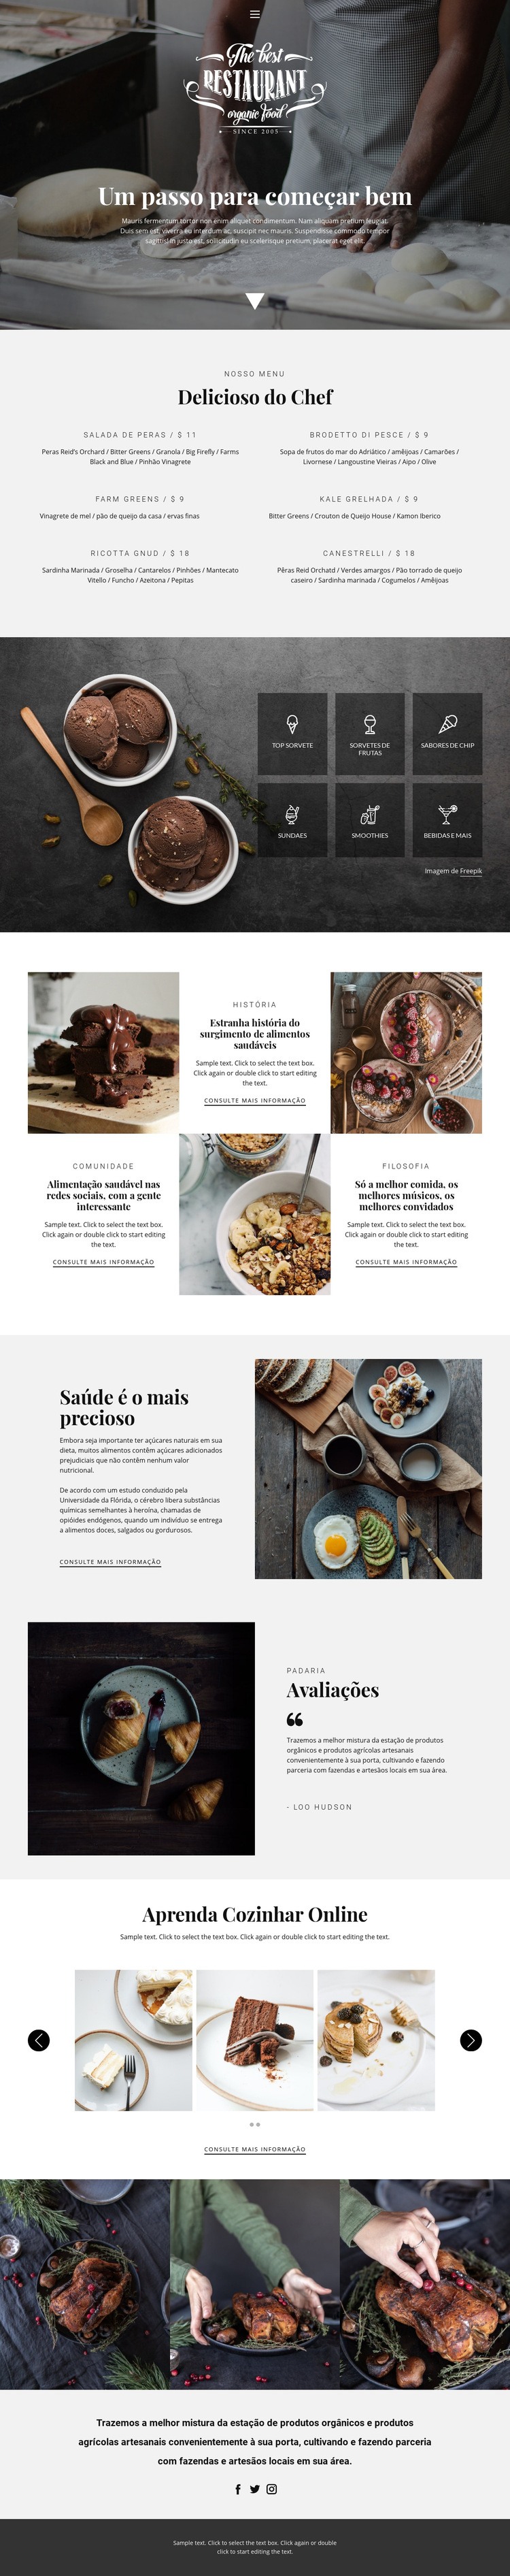 Receitas e aulas de culinária Design do site